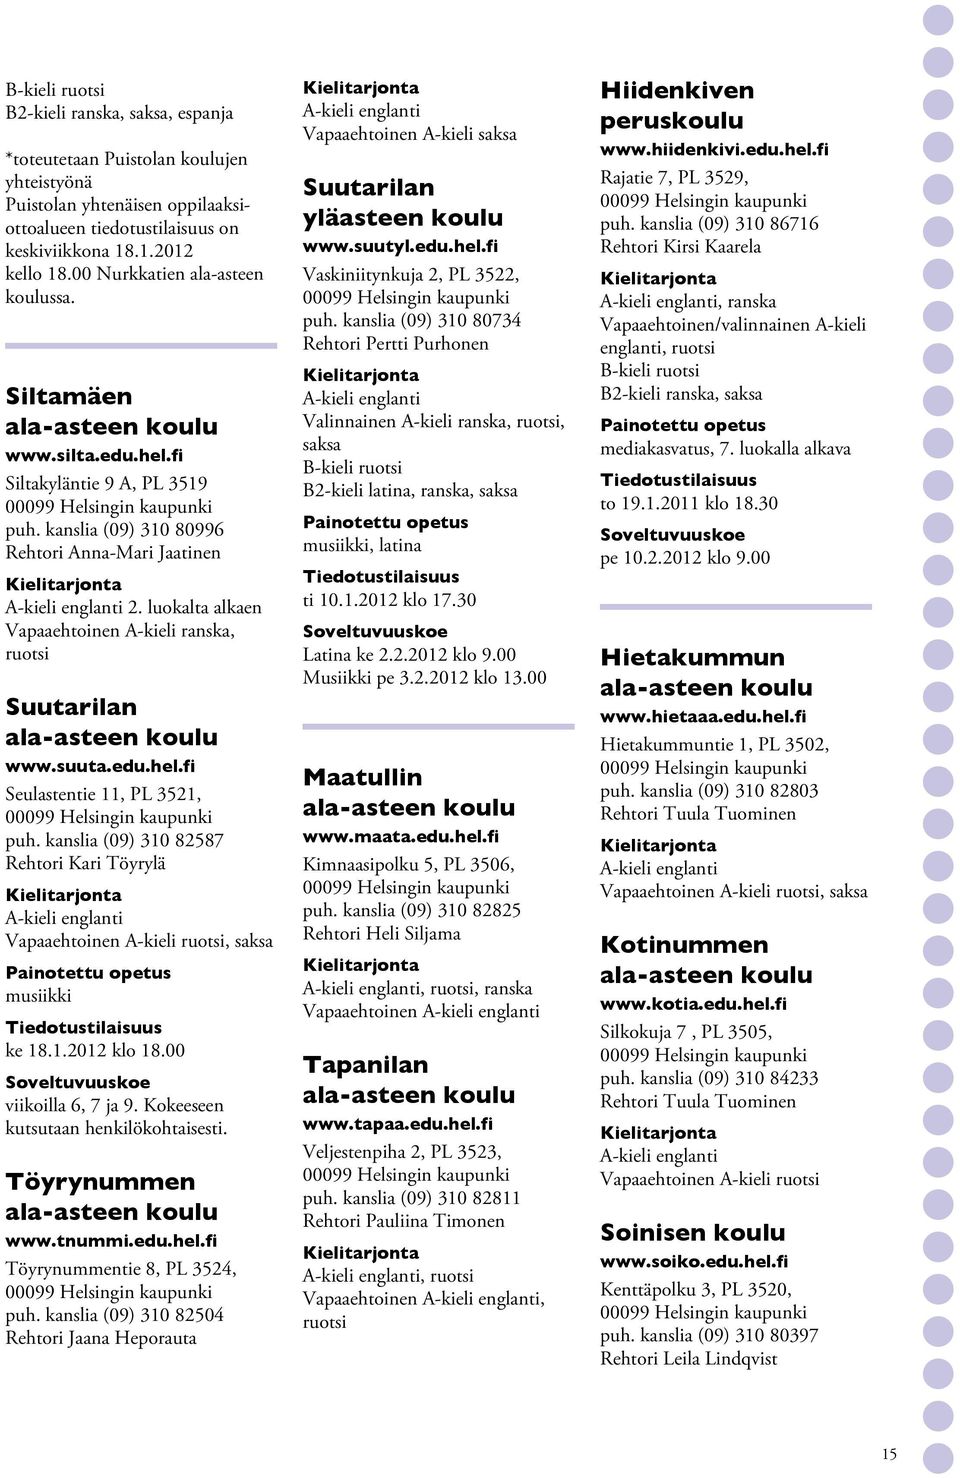 kanslia (09) 310 82587 Rehtori Kari Töyrylä Vapaaehtoinen A-kieli ruotsi, musiikki ke 18.1.2012 klo 18.00 viikoilla 6, 7 ja 9. Kokeeseen kutsutaan henkilökohtaisesti. Töyrynummen www.tnummi.edu.hel.